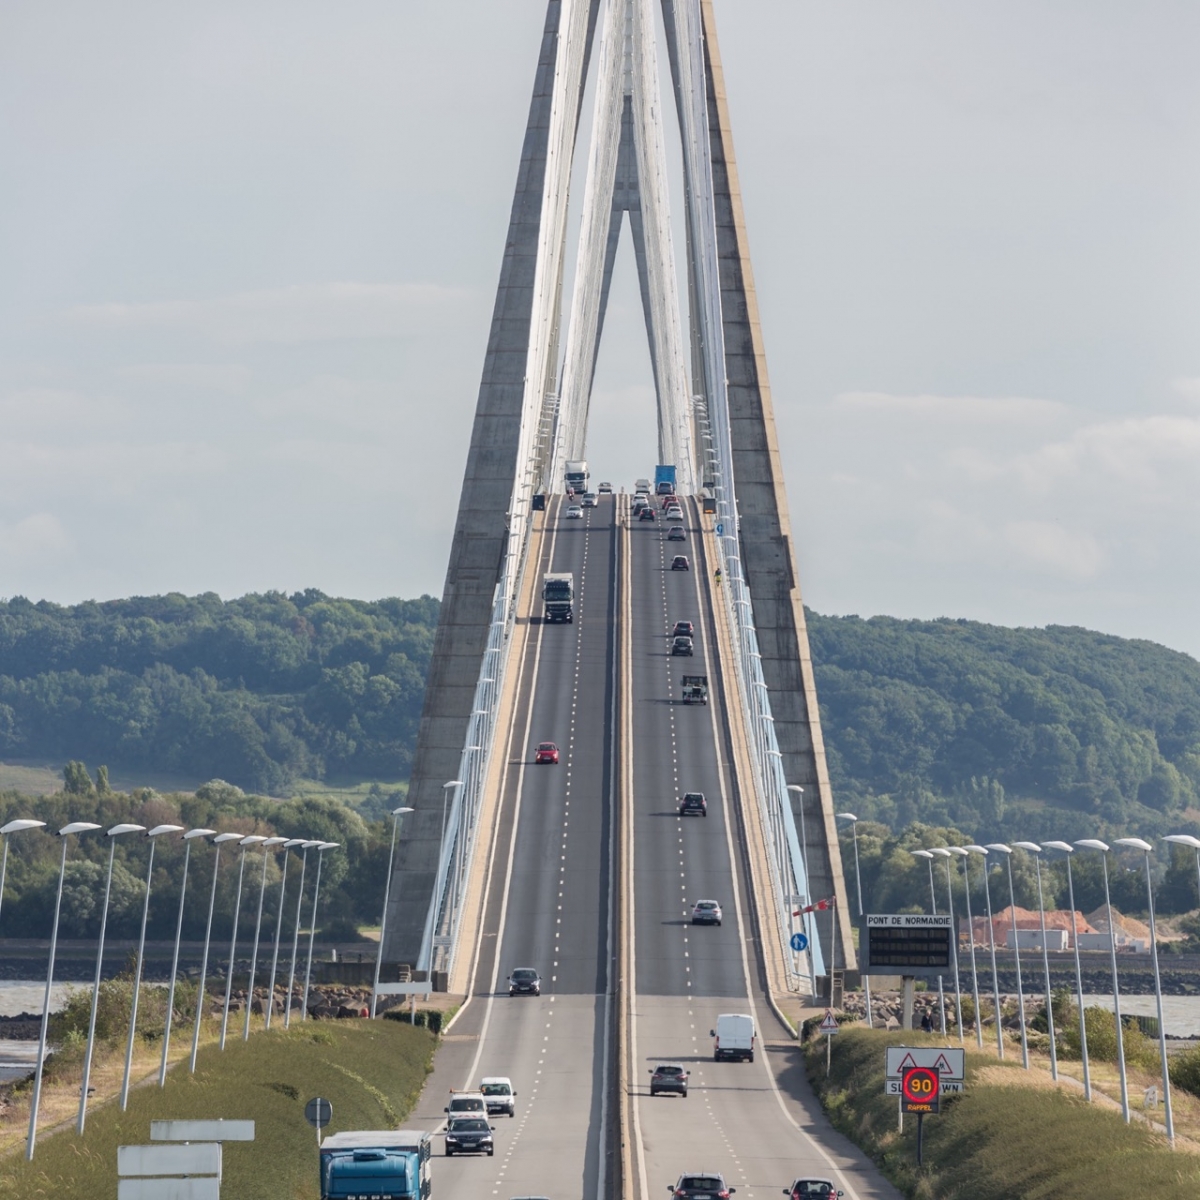 Traffico a Pont De Normandy vicino a Le Havre in Francia